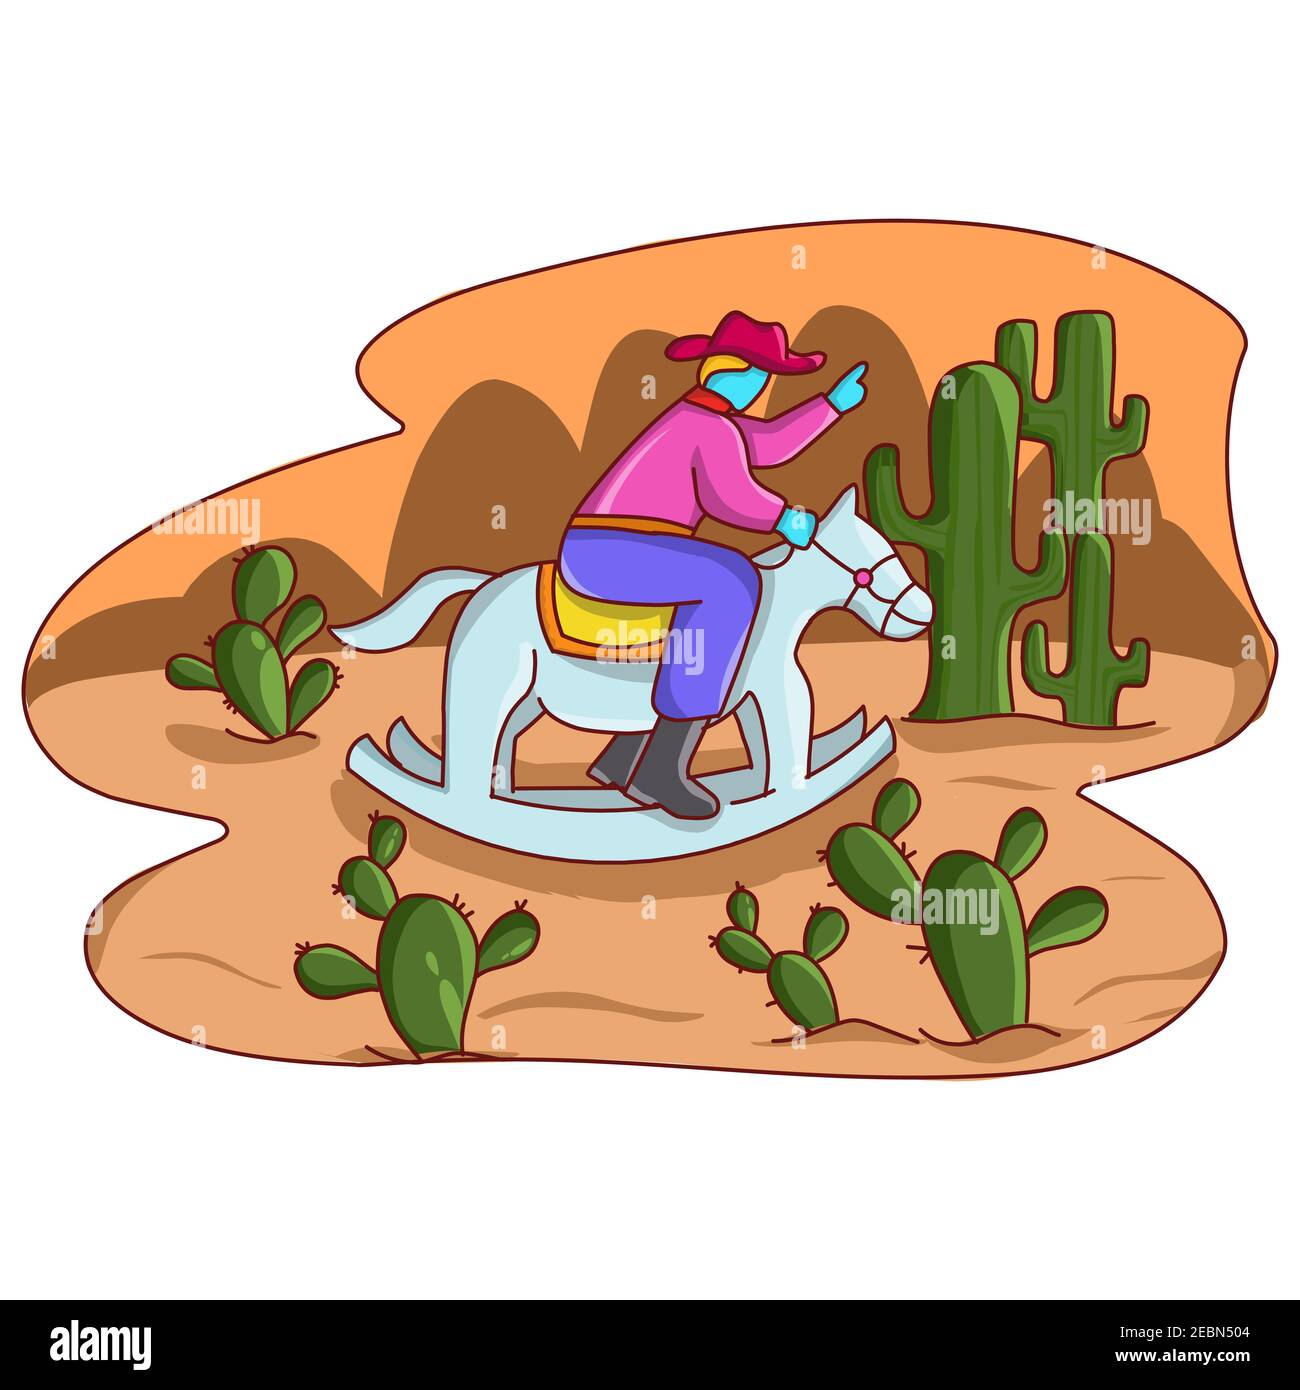 Illustrazione disegno cowboy cavalcare un cavallo dondolante sul deserto del cactus. Illustrazione vettoriale EPS.8 EPS.10 Illustrazione Vettoriale